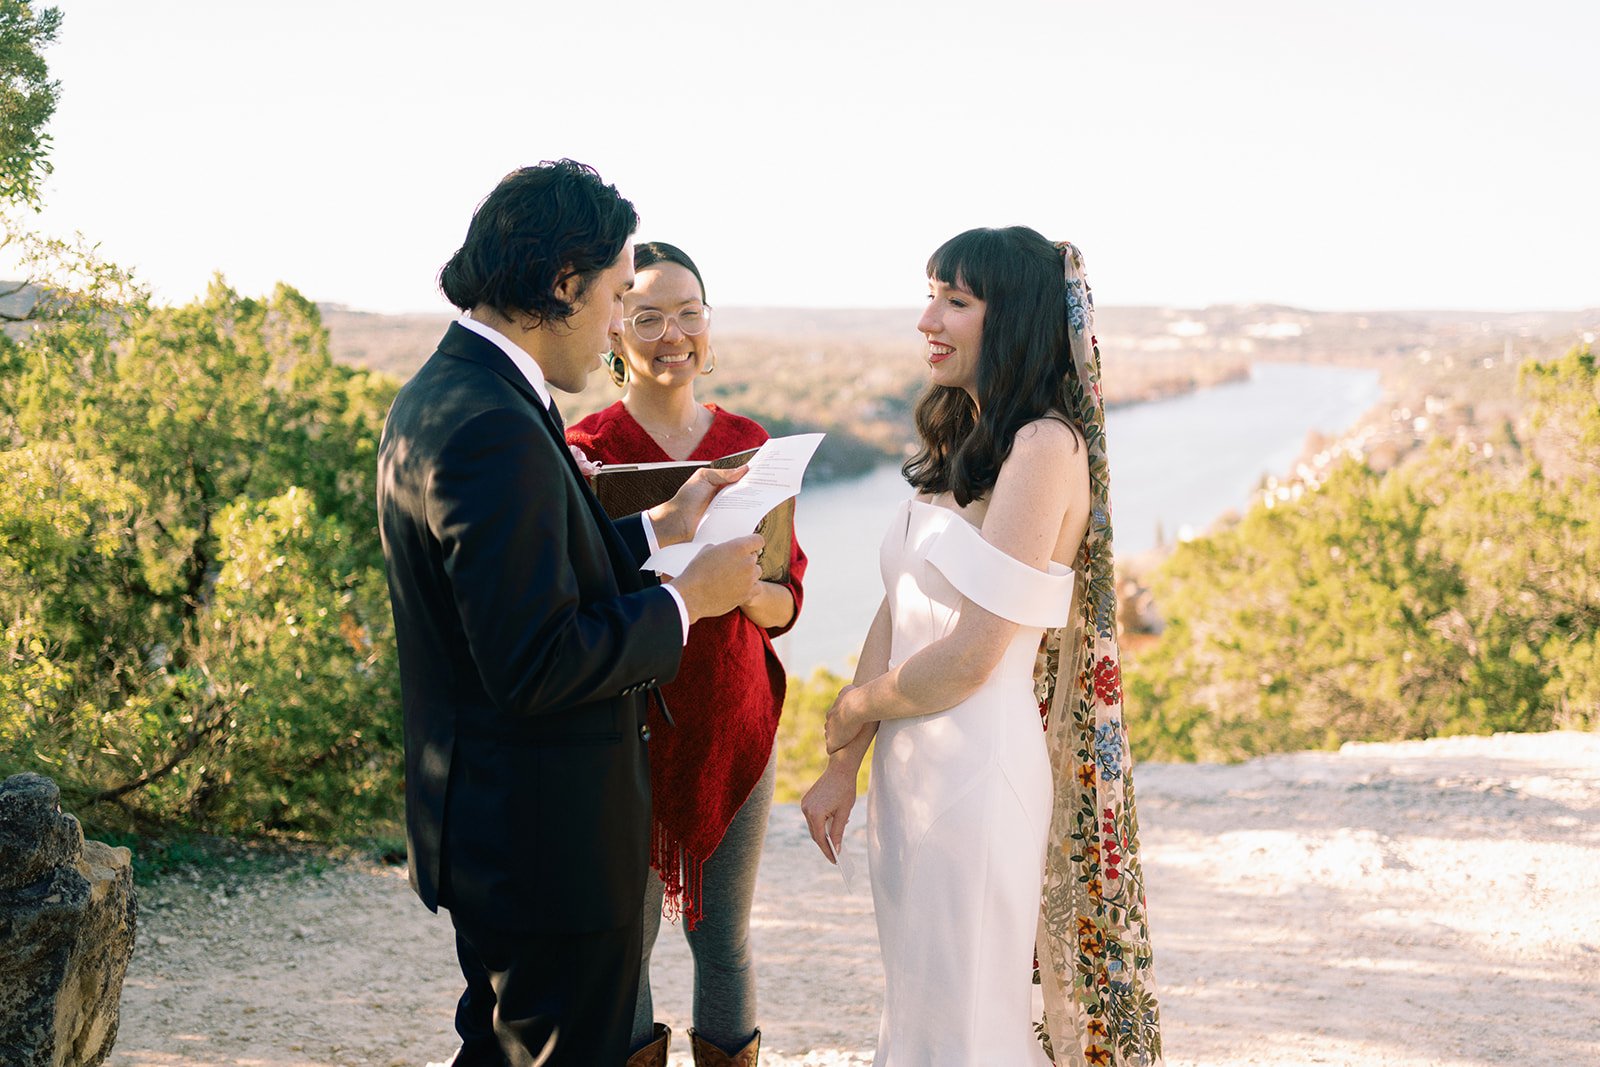 Best-Austin-Wedding-Photographers-Elopement-Film-35mm-Asheville-Santa-Barbara-Laguna-Gloria-8.jpg